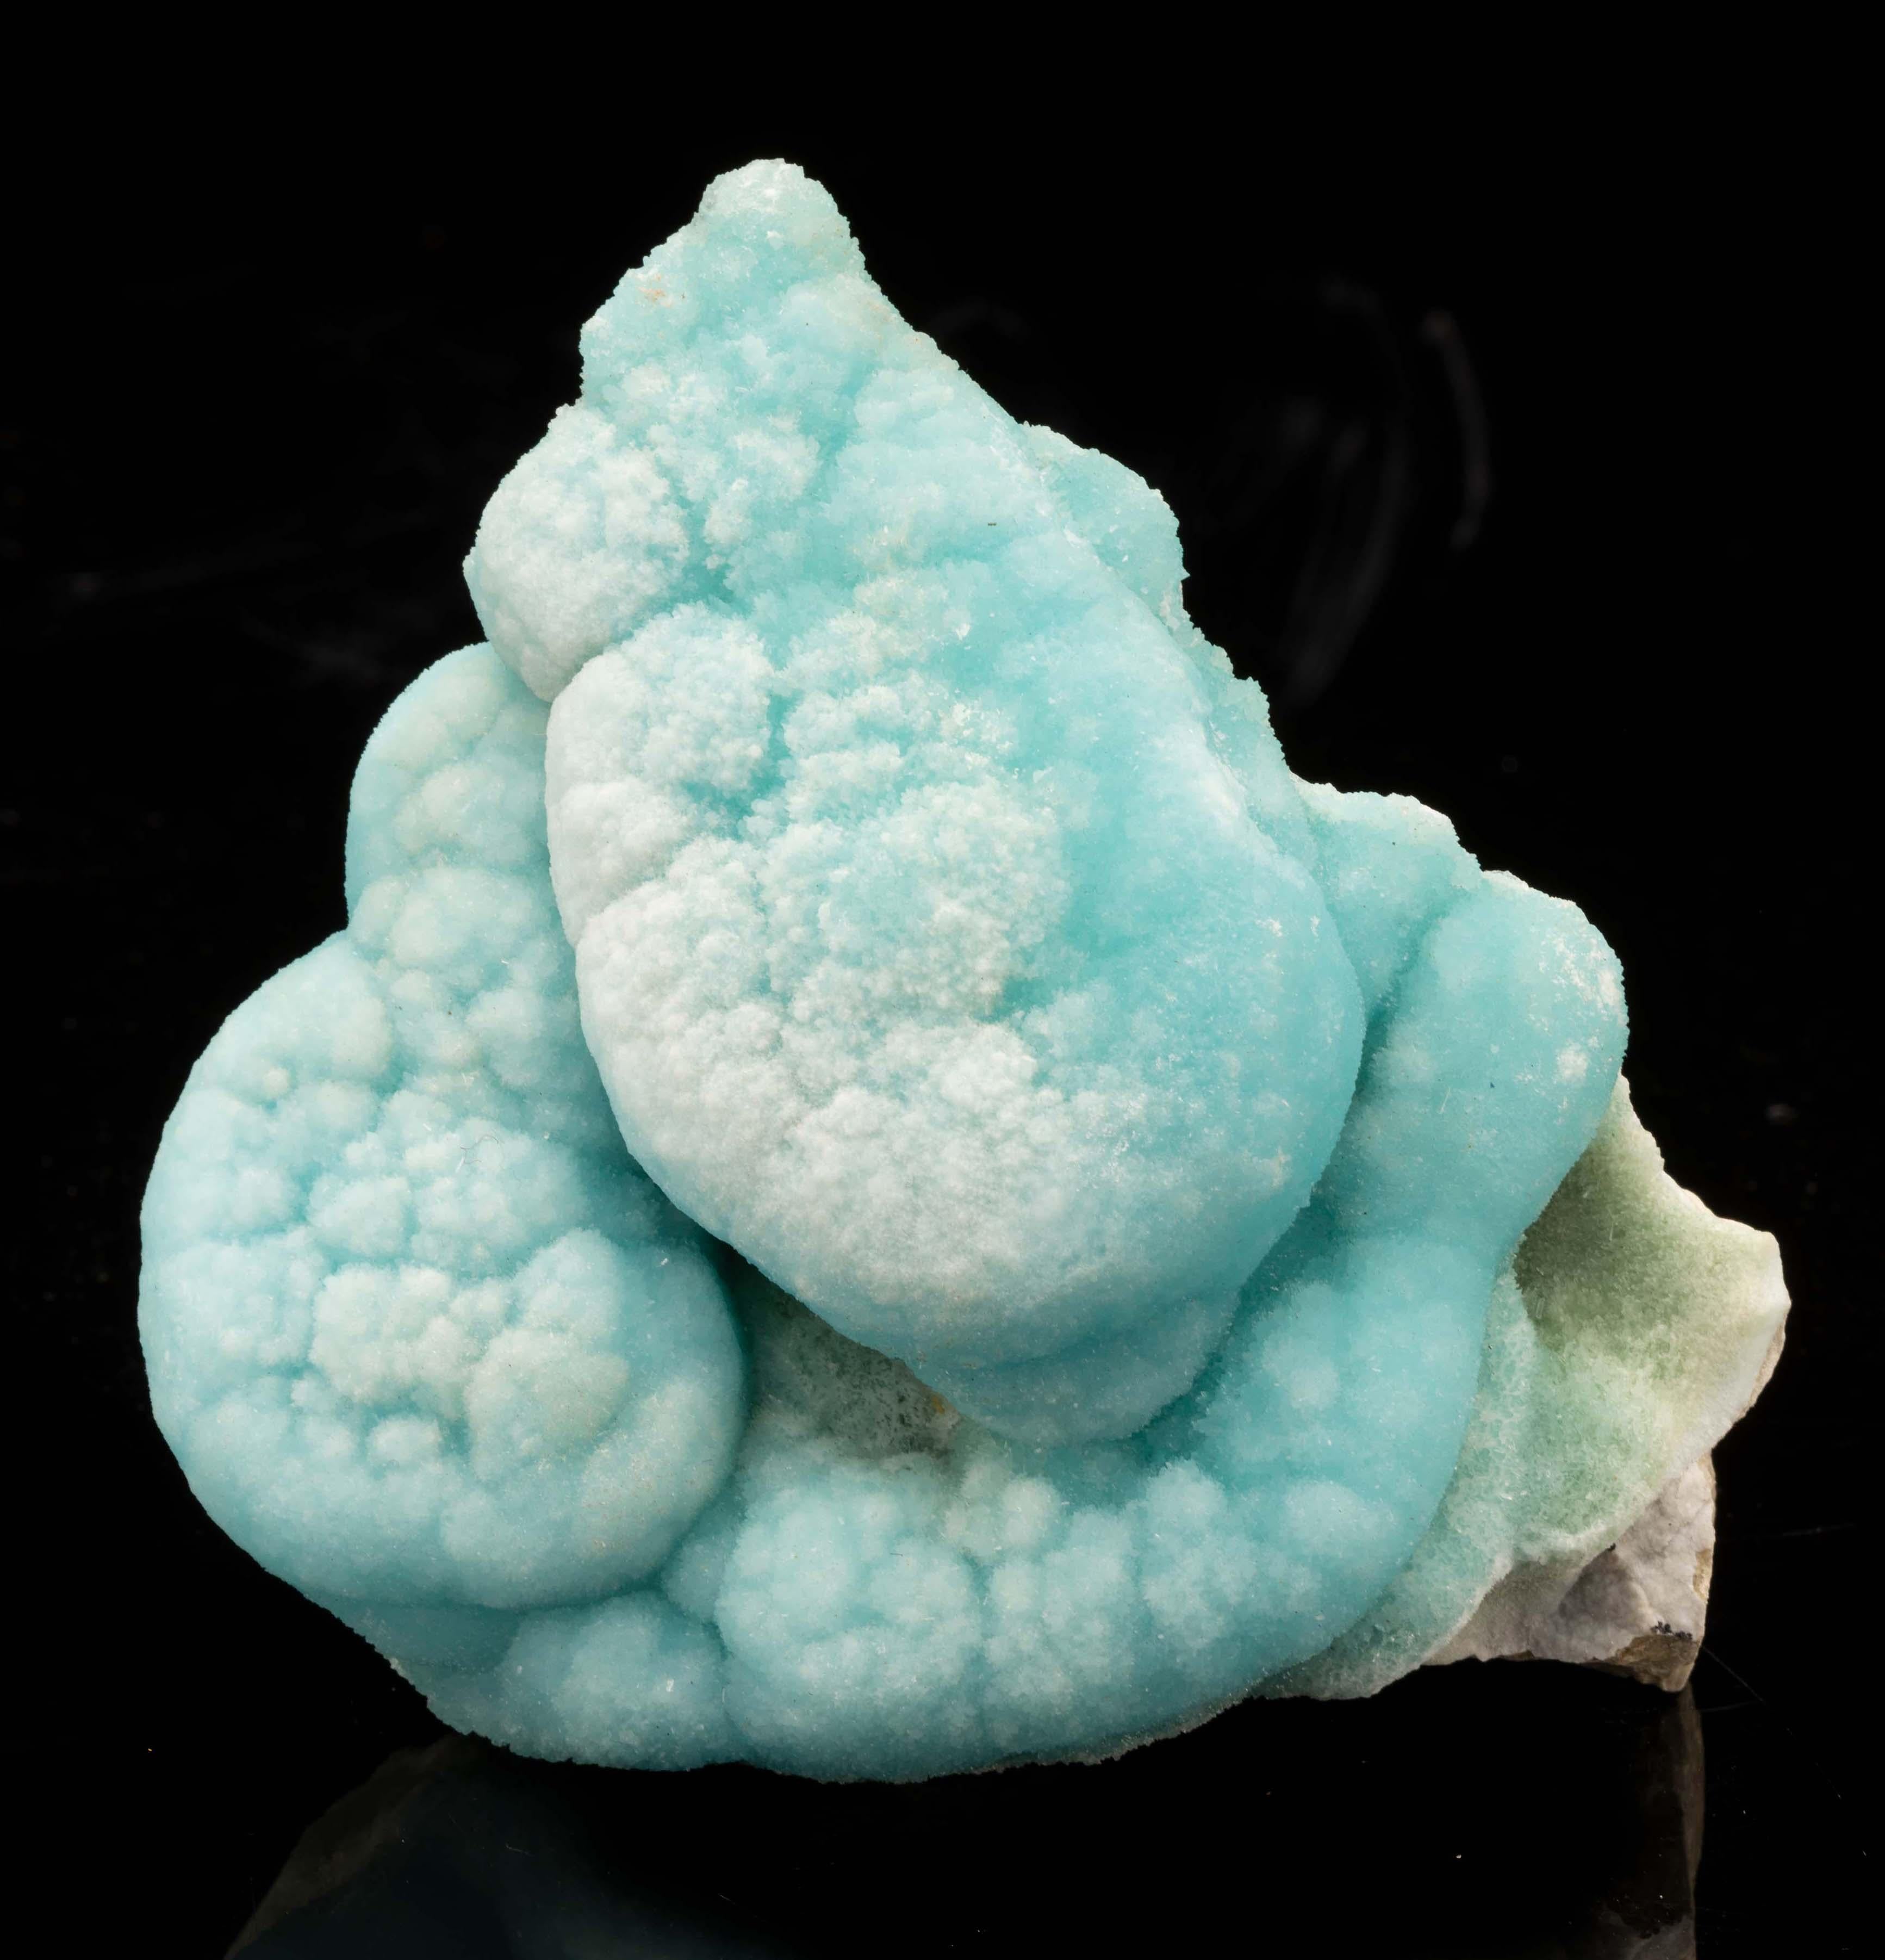 Dieser ruhig gefärbte blaugrüne Aragonit ist ein besonderer Fund für den anspruchsvollen Mineralienliebhaber. Die kristallisierte blaue Form des Kalziumkarbonat-Minerals ist sehr begehrt, und es ist ungewöhnlich, Stücke mit einem so starken Glanz